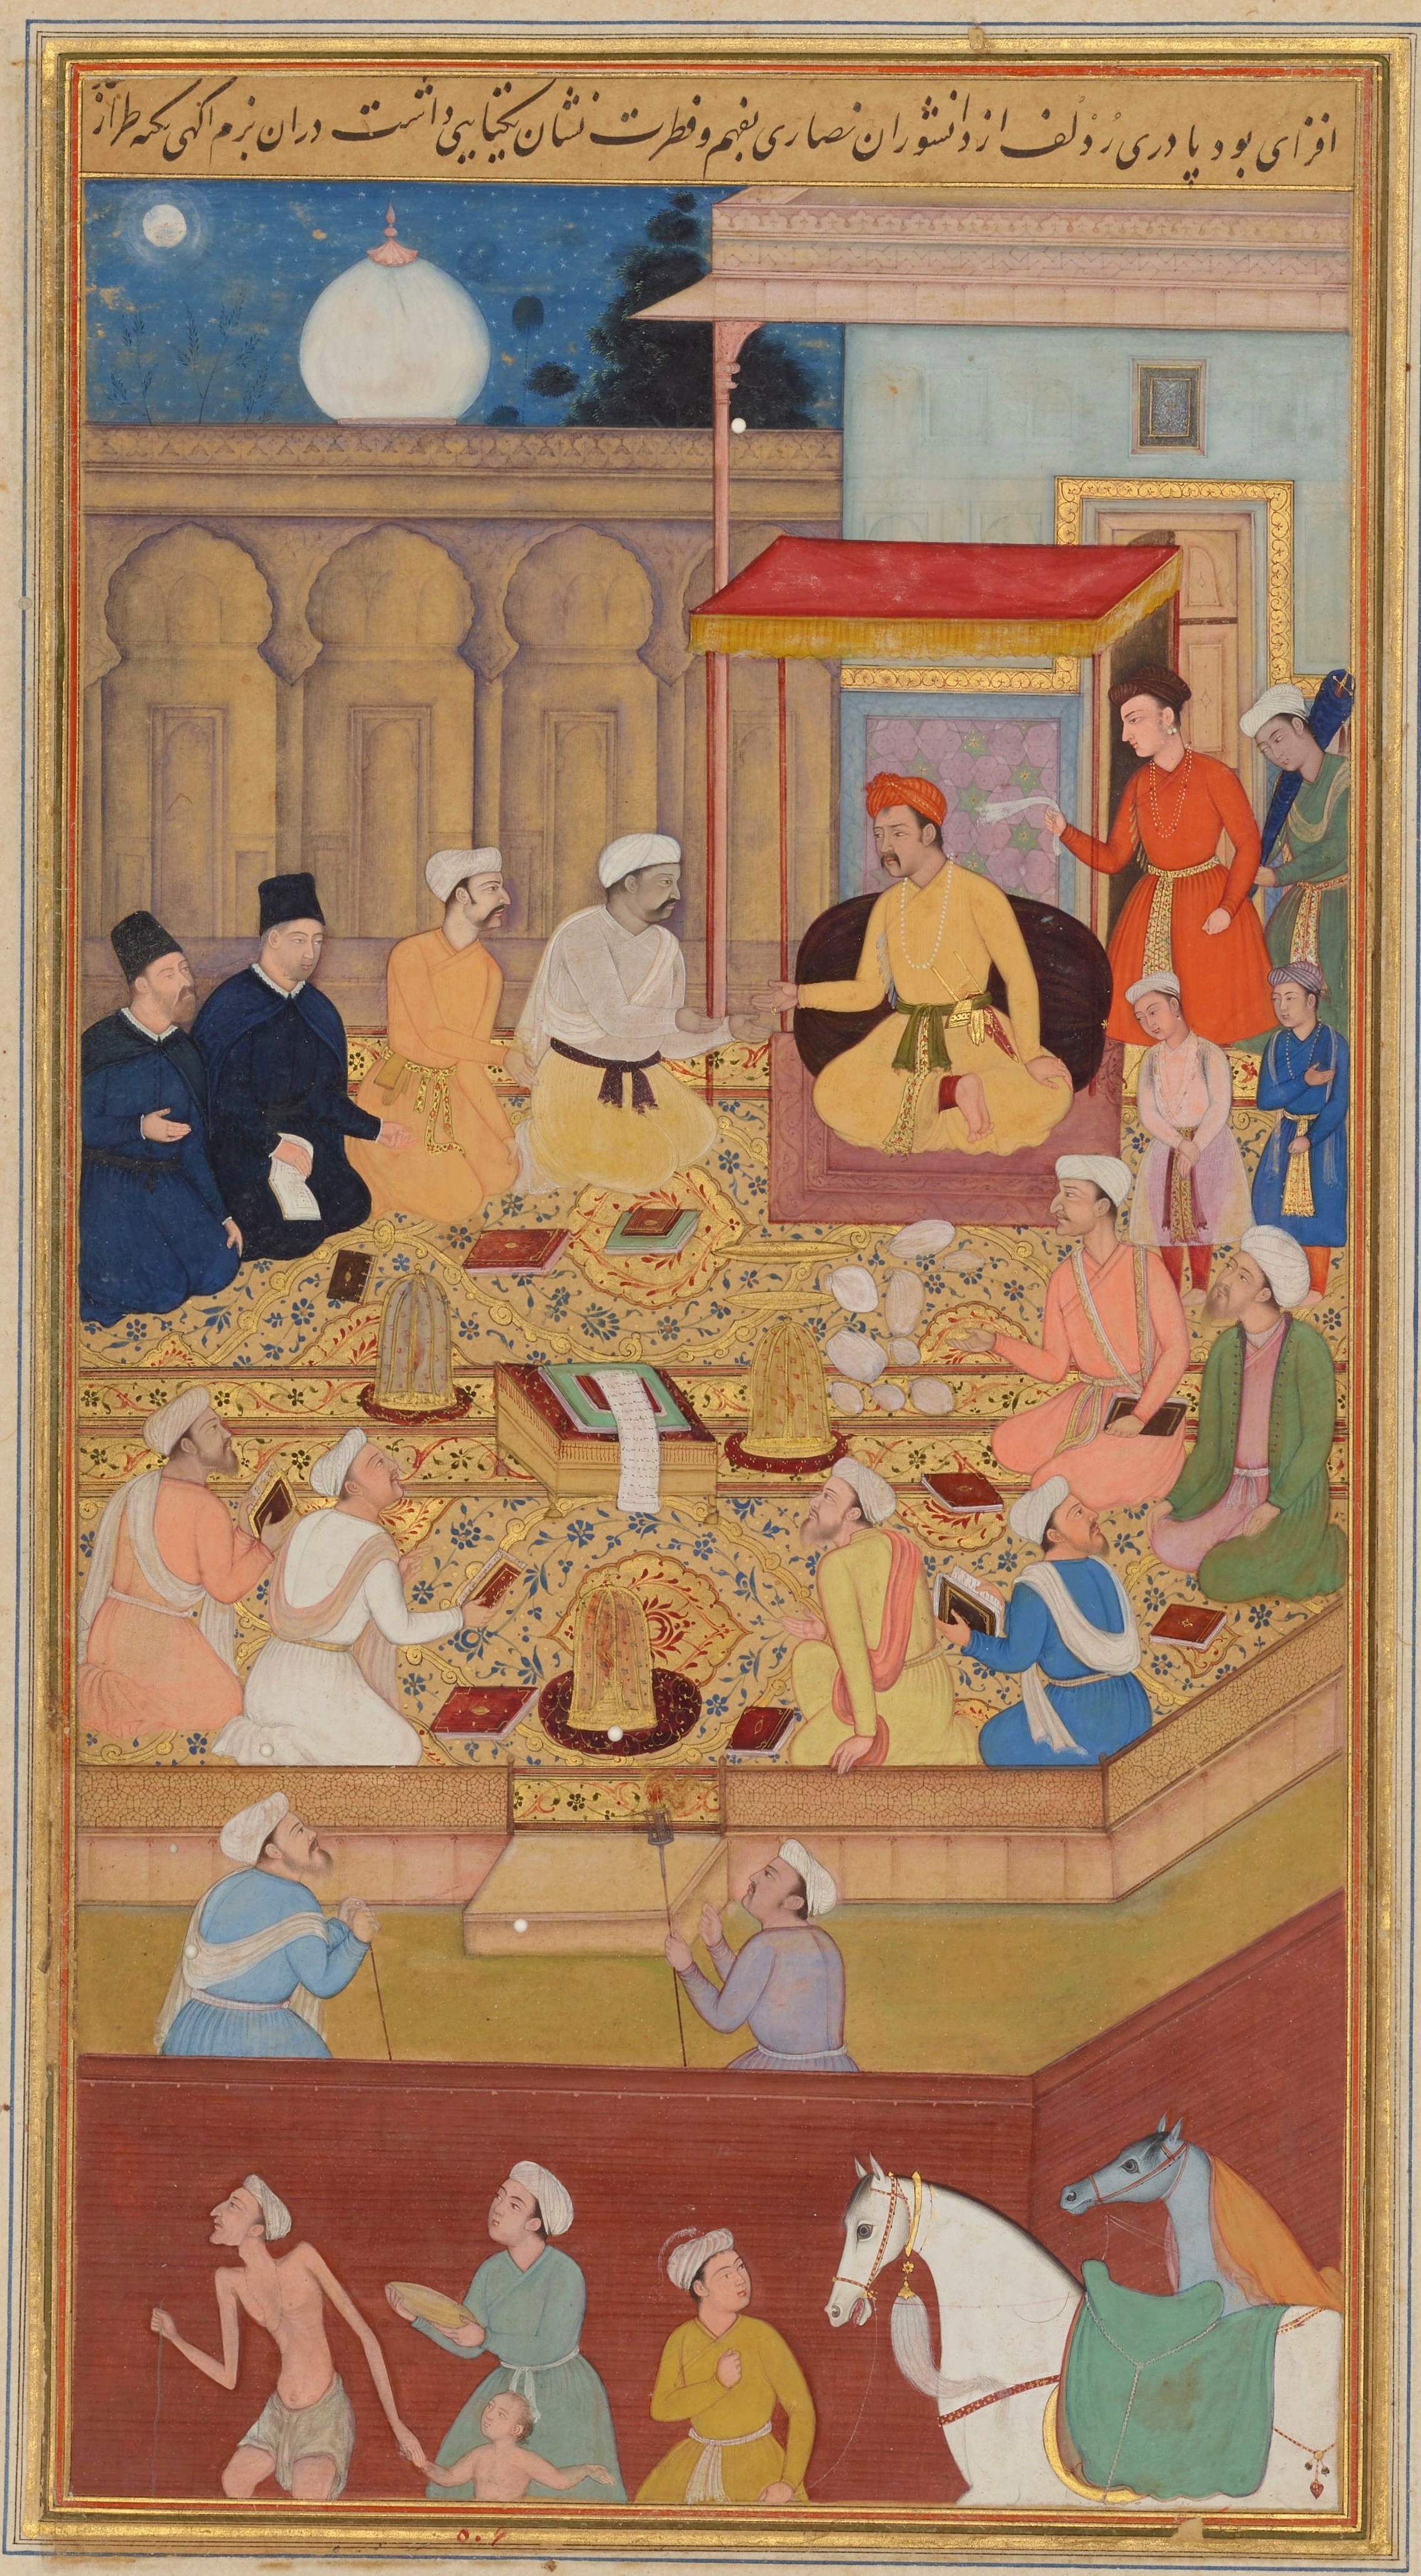 Jezuité na Akbarově dvoře by Nar Singh - 1603 - 1605 